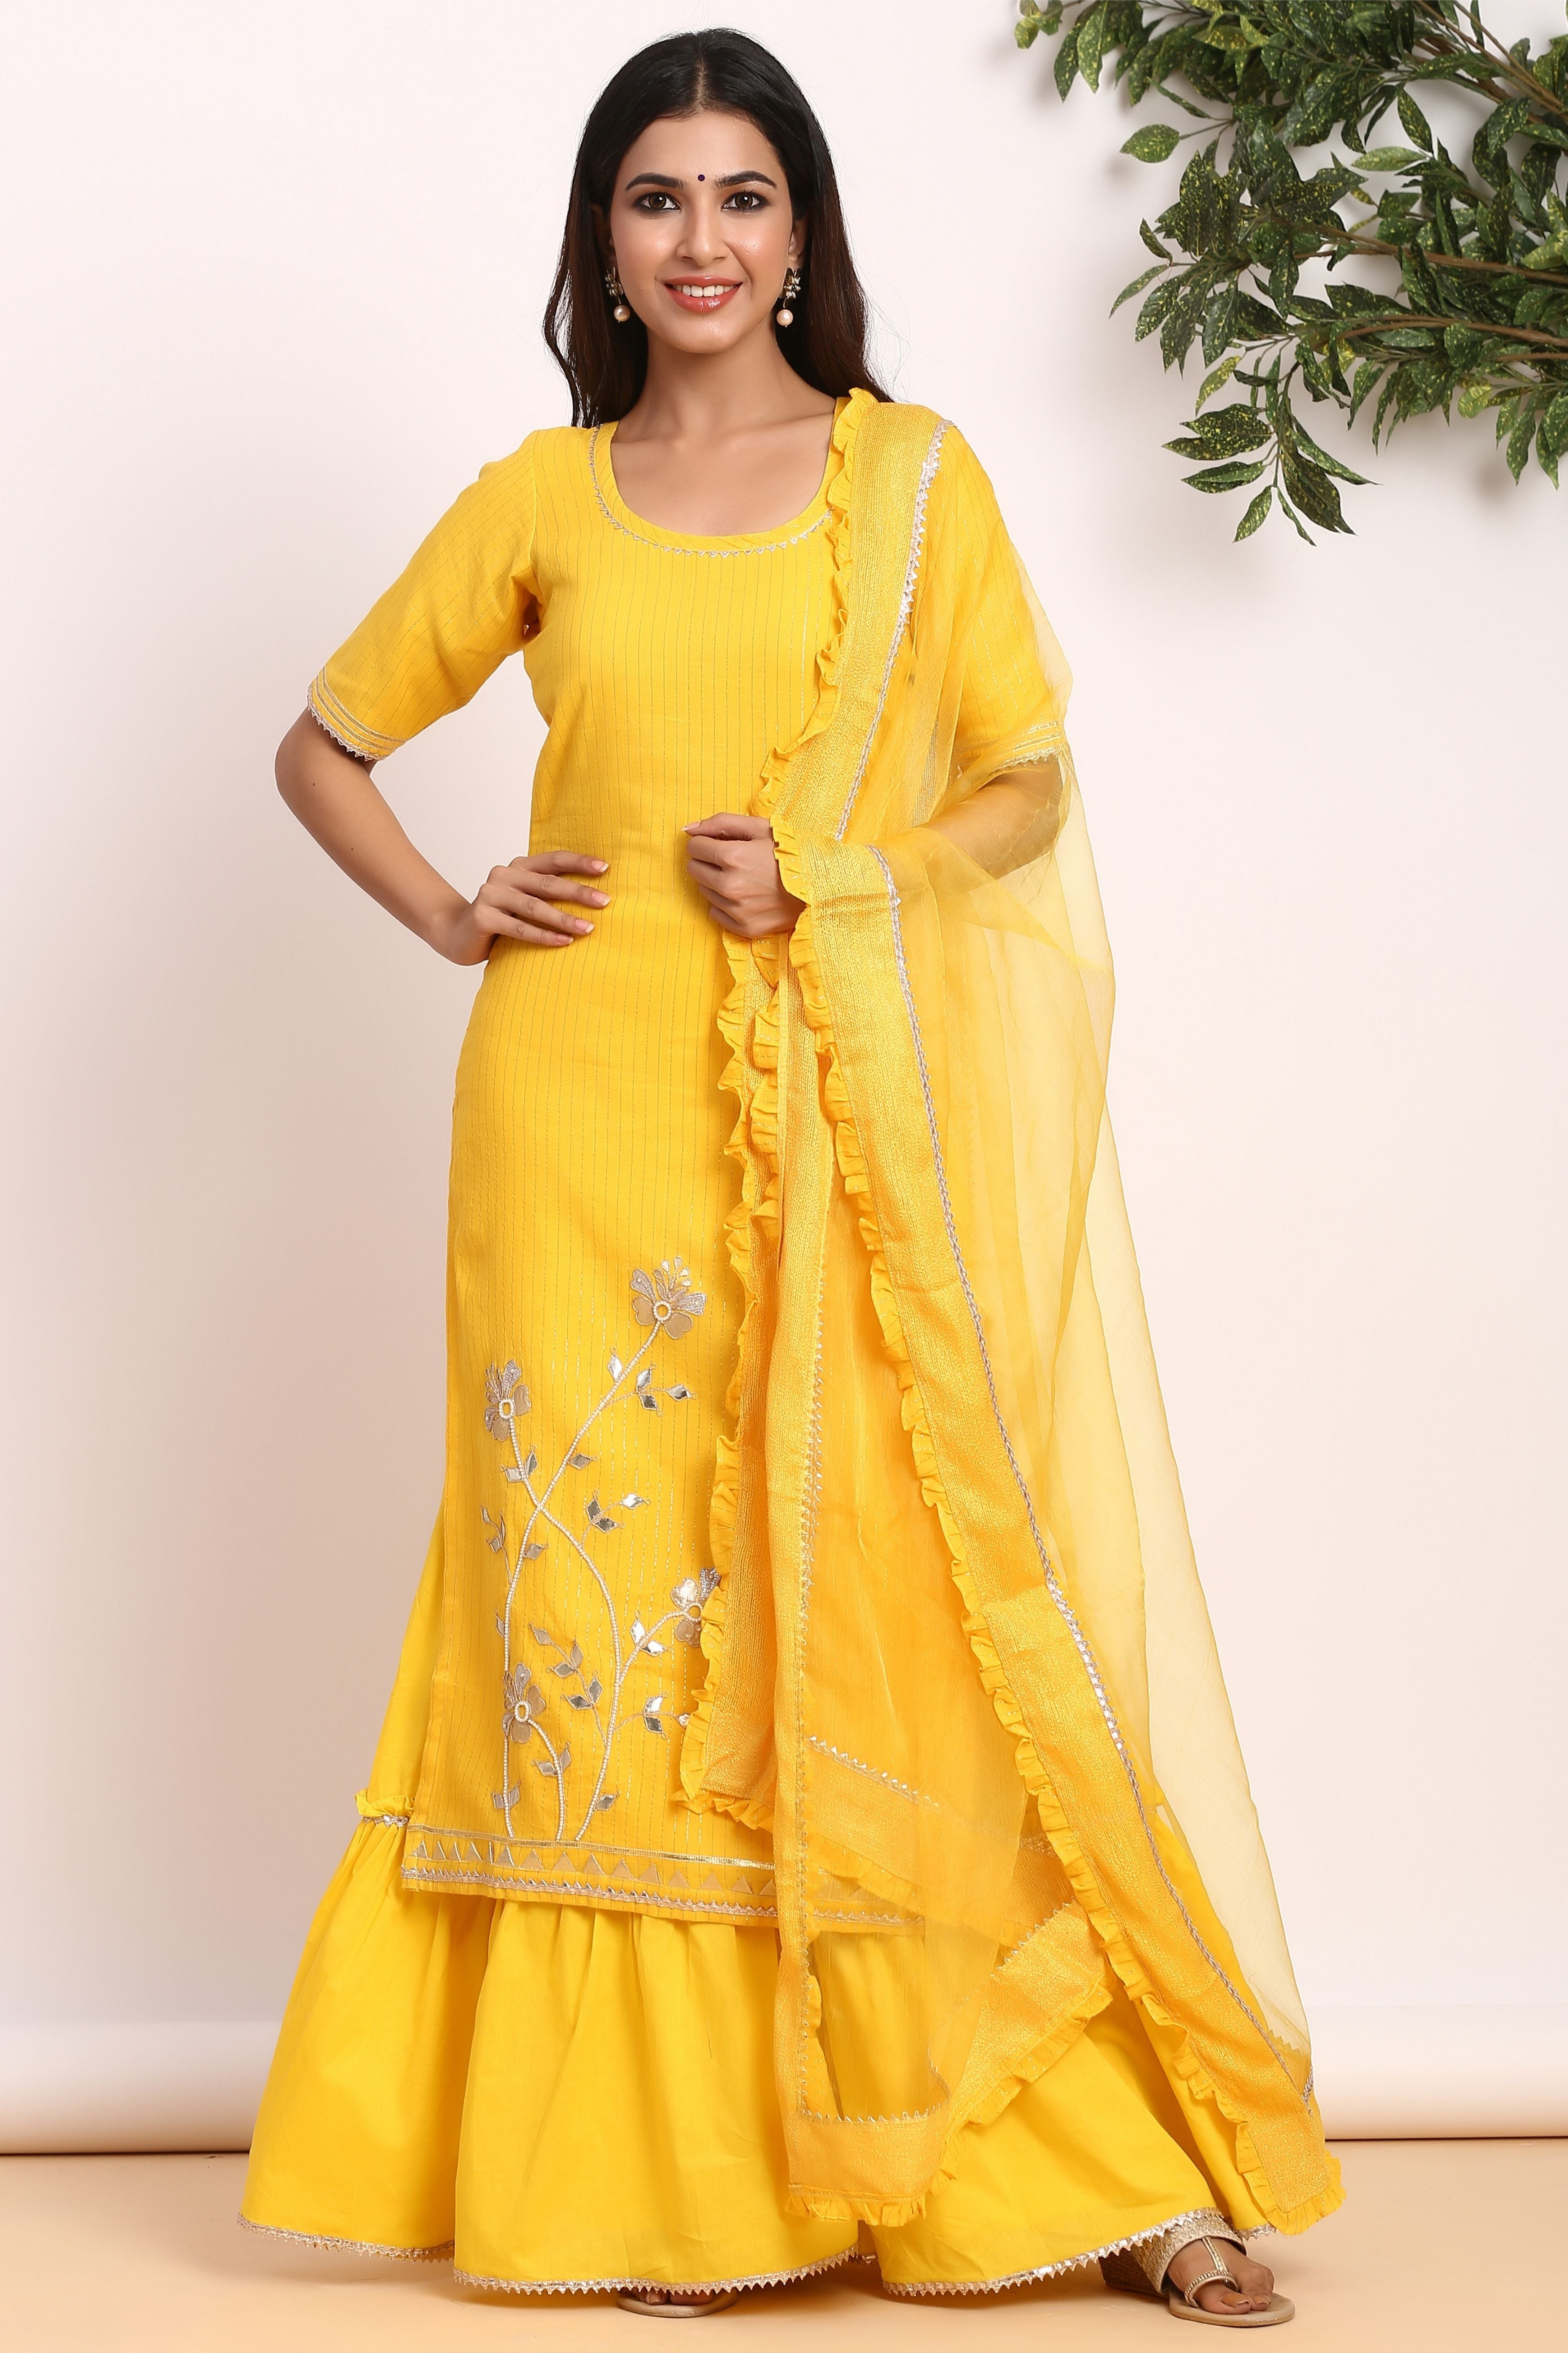 Lemon Yellow Sharara Suit With Price For Raksha Bandhan